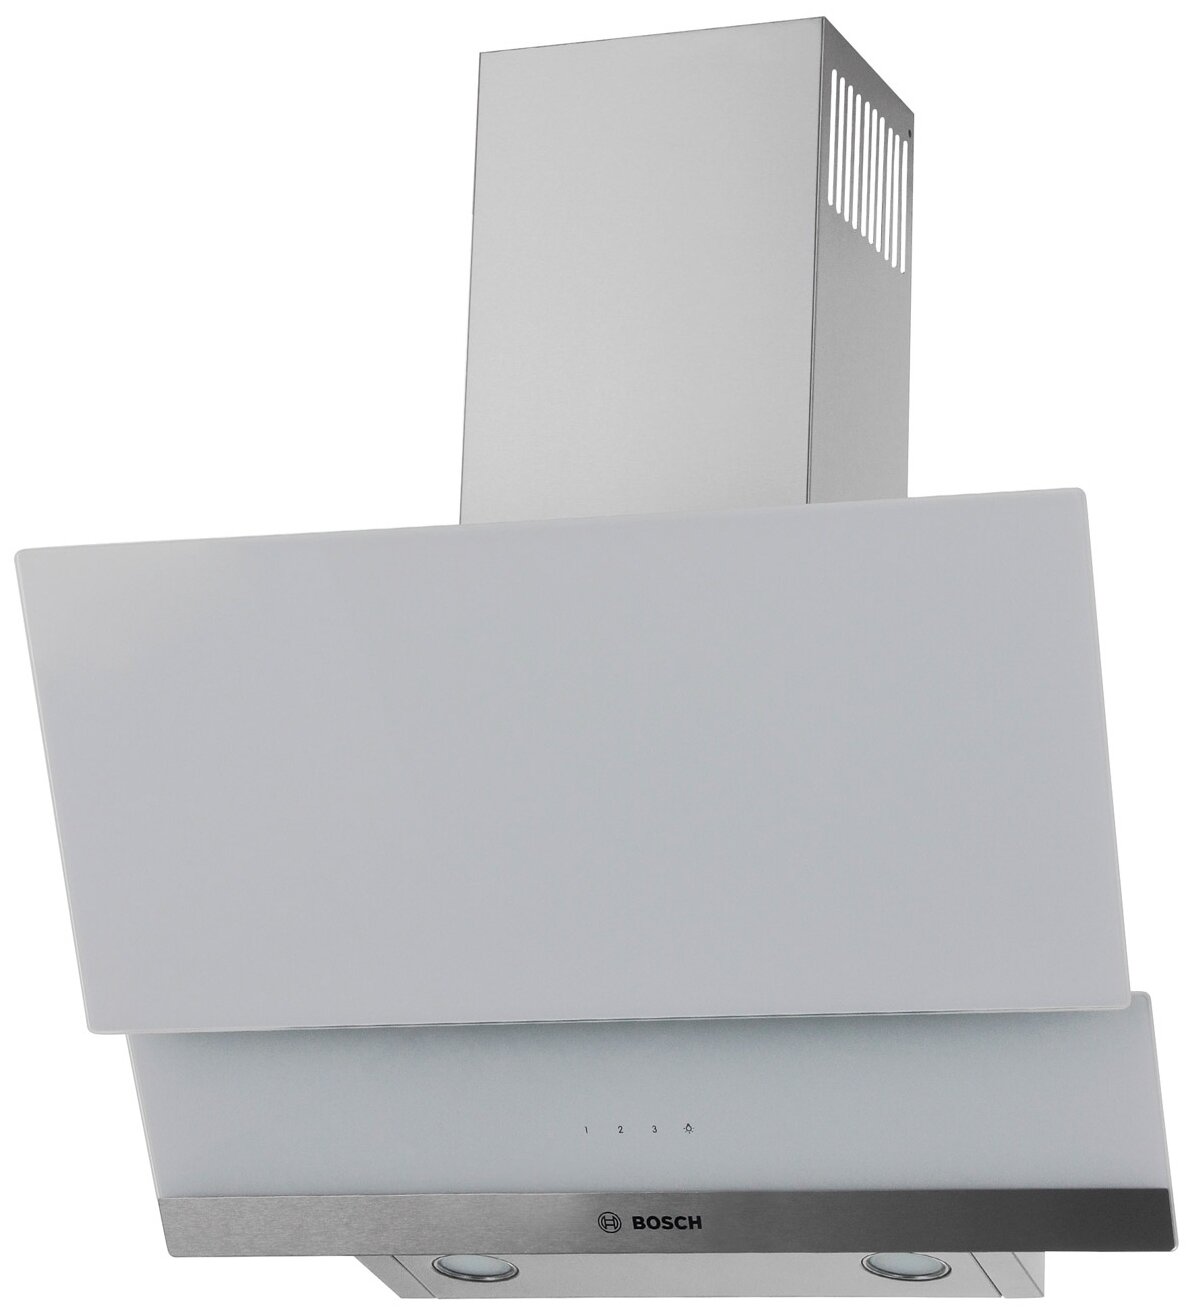 Наклонная вытяжка Bosch DWK065G20R, цвет корпуса серебристый, цвет окантовки/панели белый